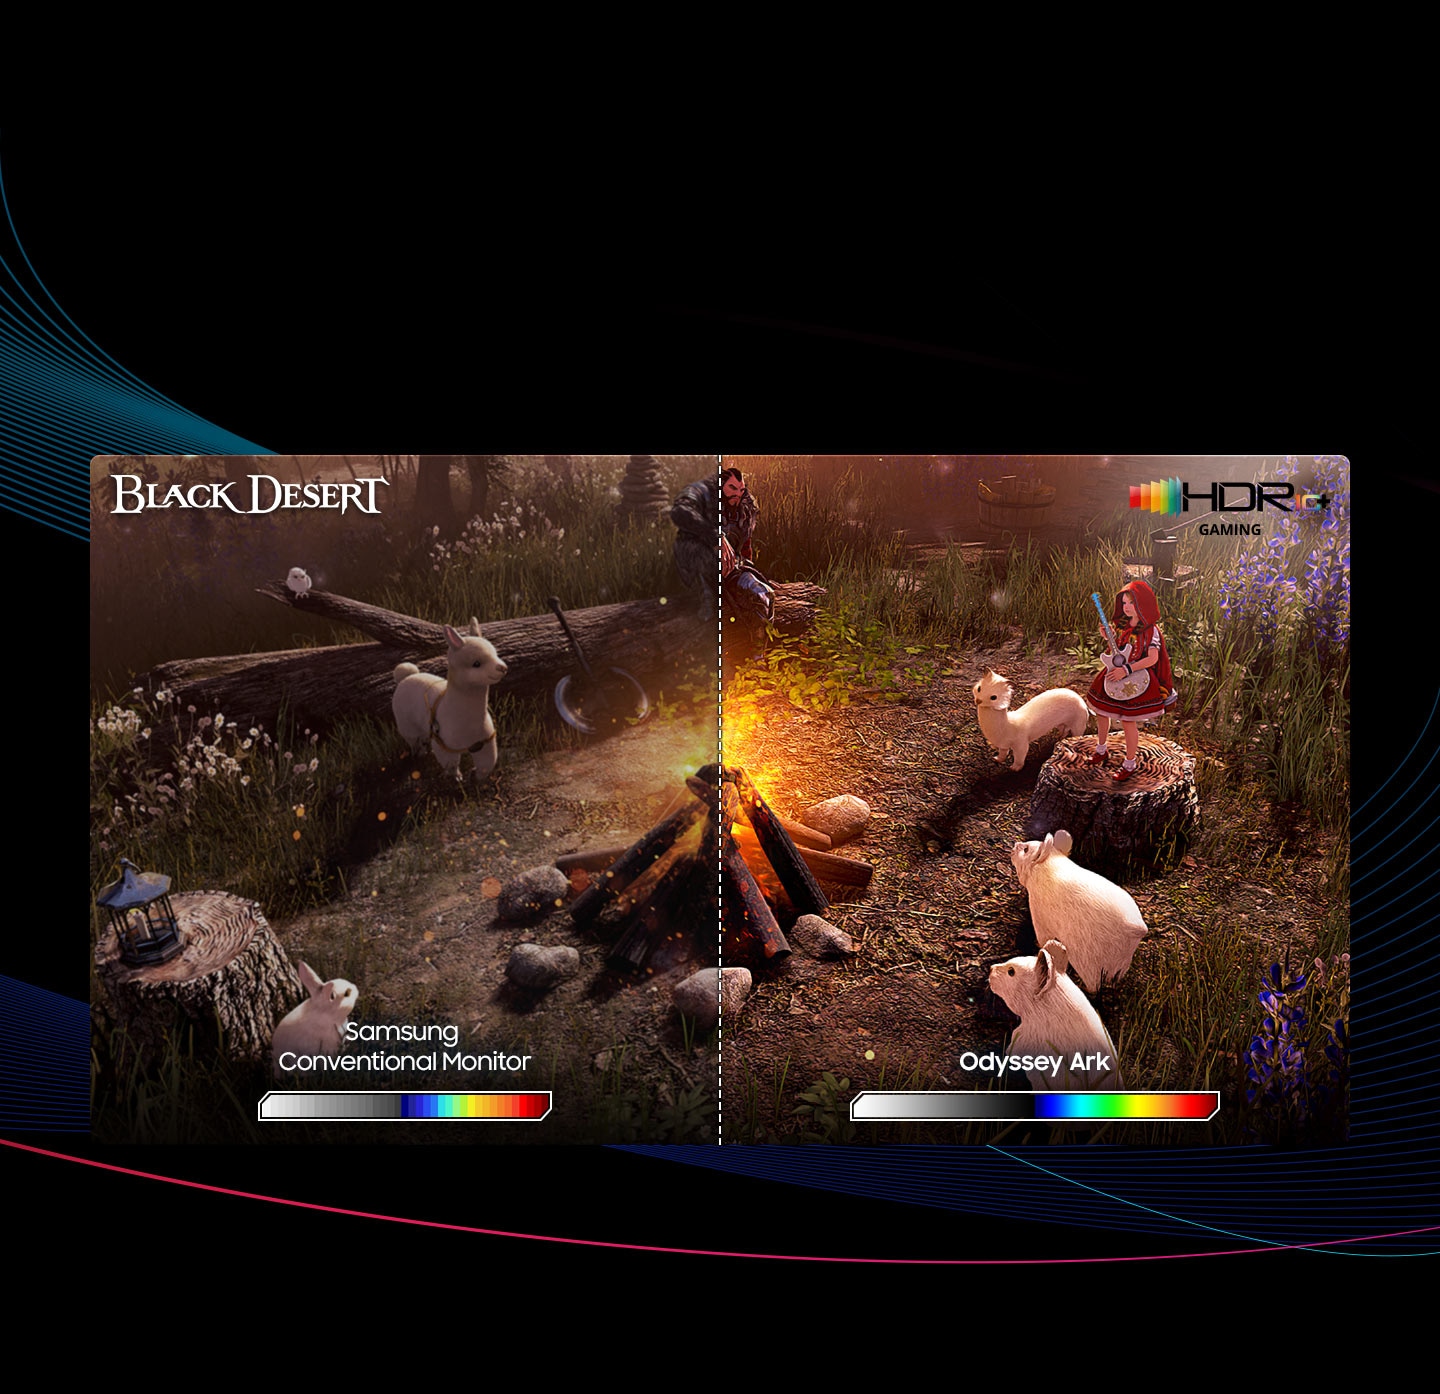 Posnetek zaslona prikazuje prizor tabornega ognja v Black Desert. Moški, dekle in živali z belim kožuhom sedijo ob tabornem ognju. Zaslon je razdeljen na dve strani. Leva stran zaslona je označena z "Konvencionalni monitor", pod njim pa je barvna lestvica od bele do rdeče. Desna stran zaslona je označena z "Odyssey Ark", prav tako z barvno lestvico. Barve na desni strani zaslona so bolj živahne in barvna lestvica ima bolj gladke prehode med barvami.